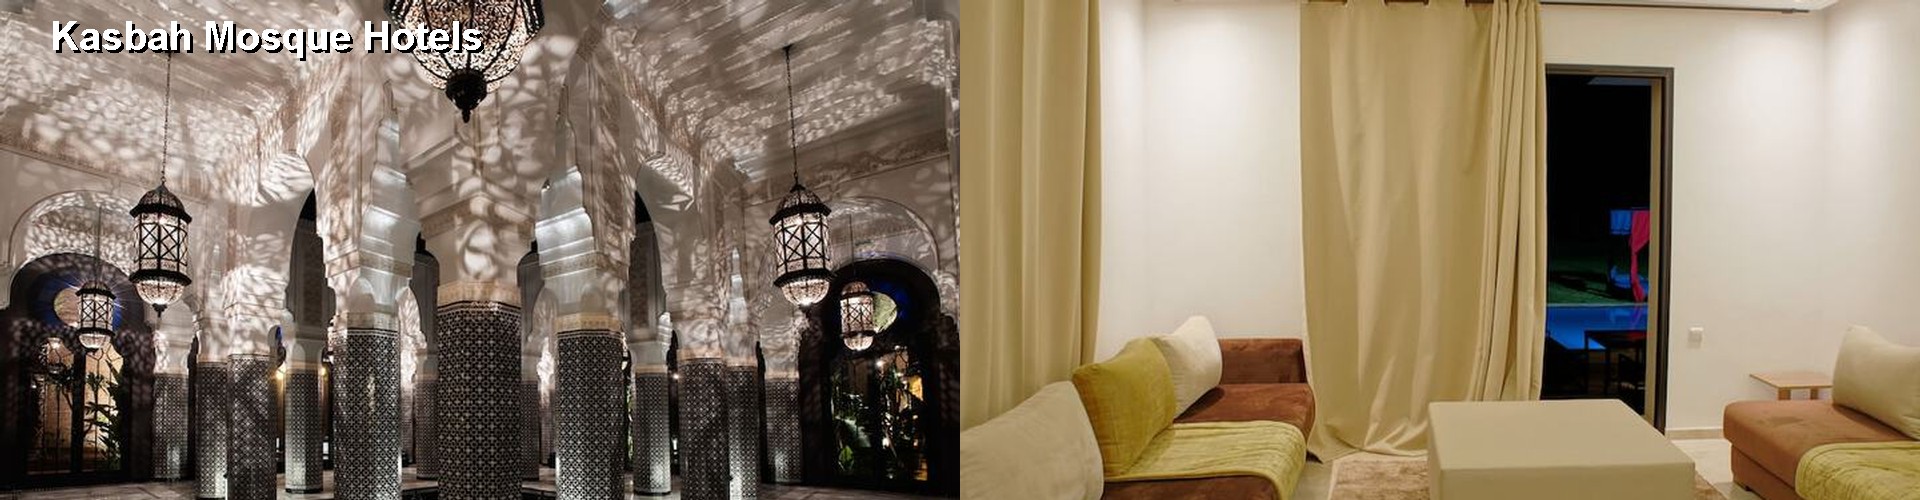 5 Best Hotels near Kasbah Mosque